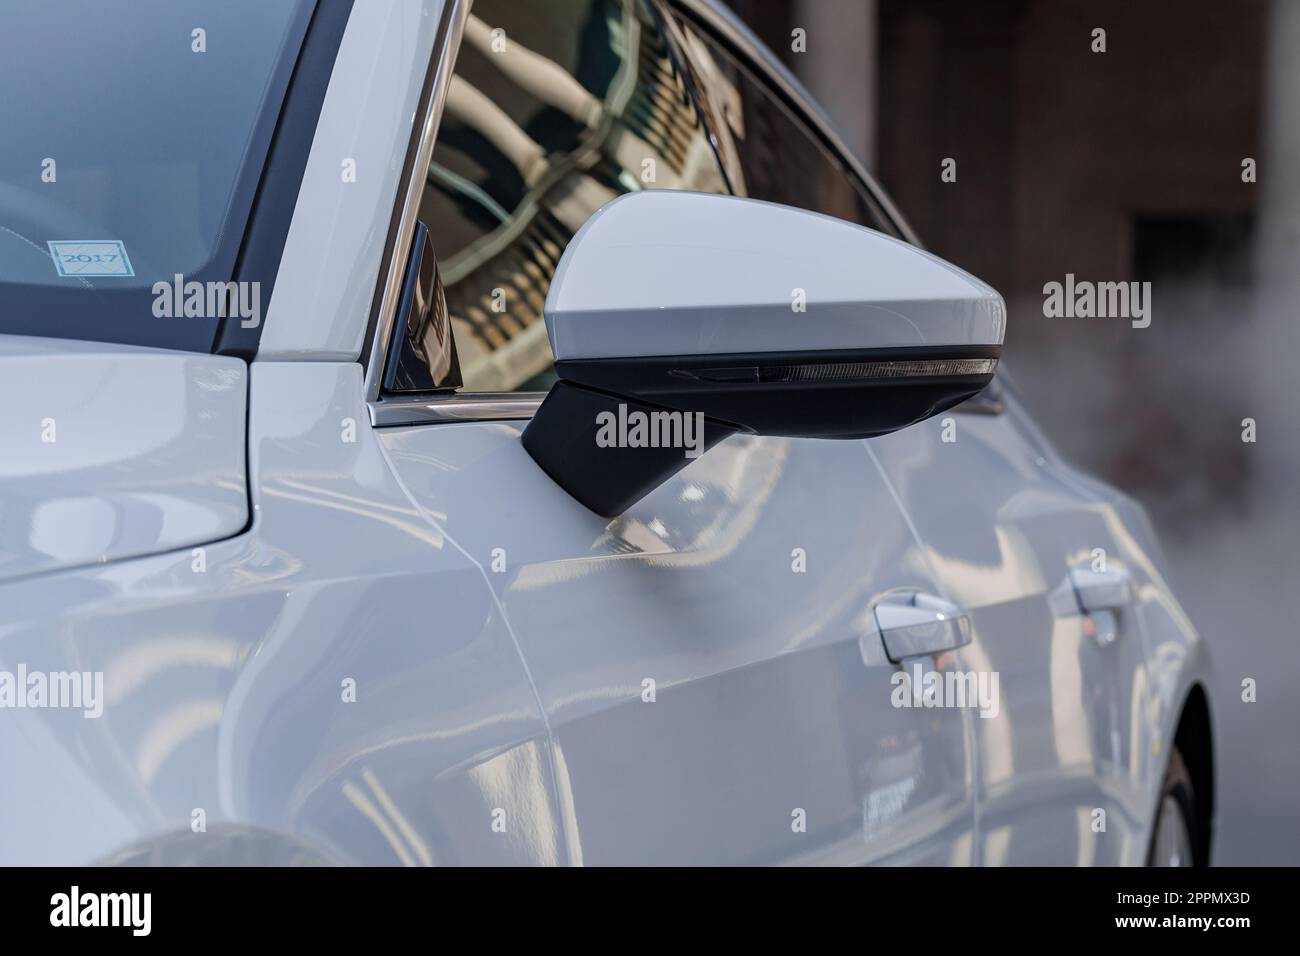 MILANO, ITALIA - APRILE 16 2018: Audi City LAB. Vista ravvicinata del pannello laterale lucido di un'auto audi e dello specchietto retrovisore. Foto Stock